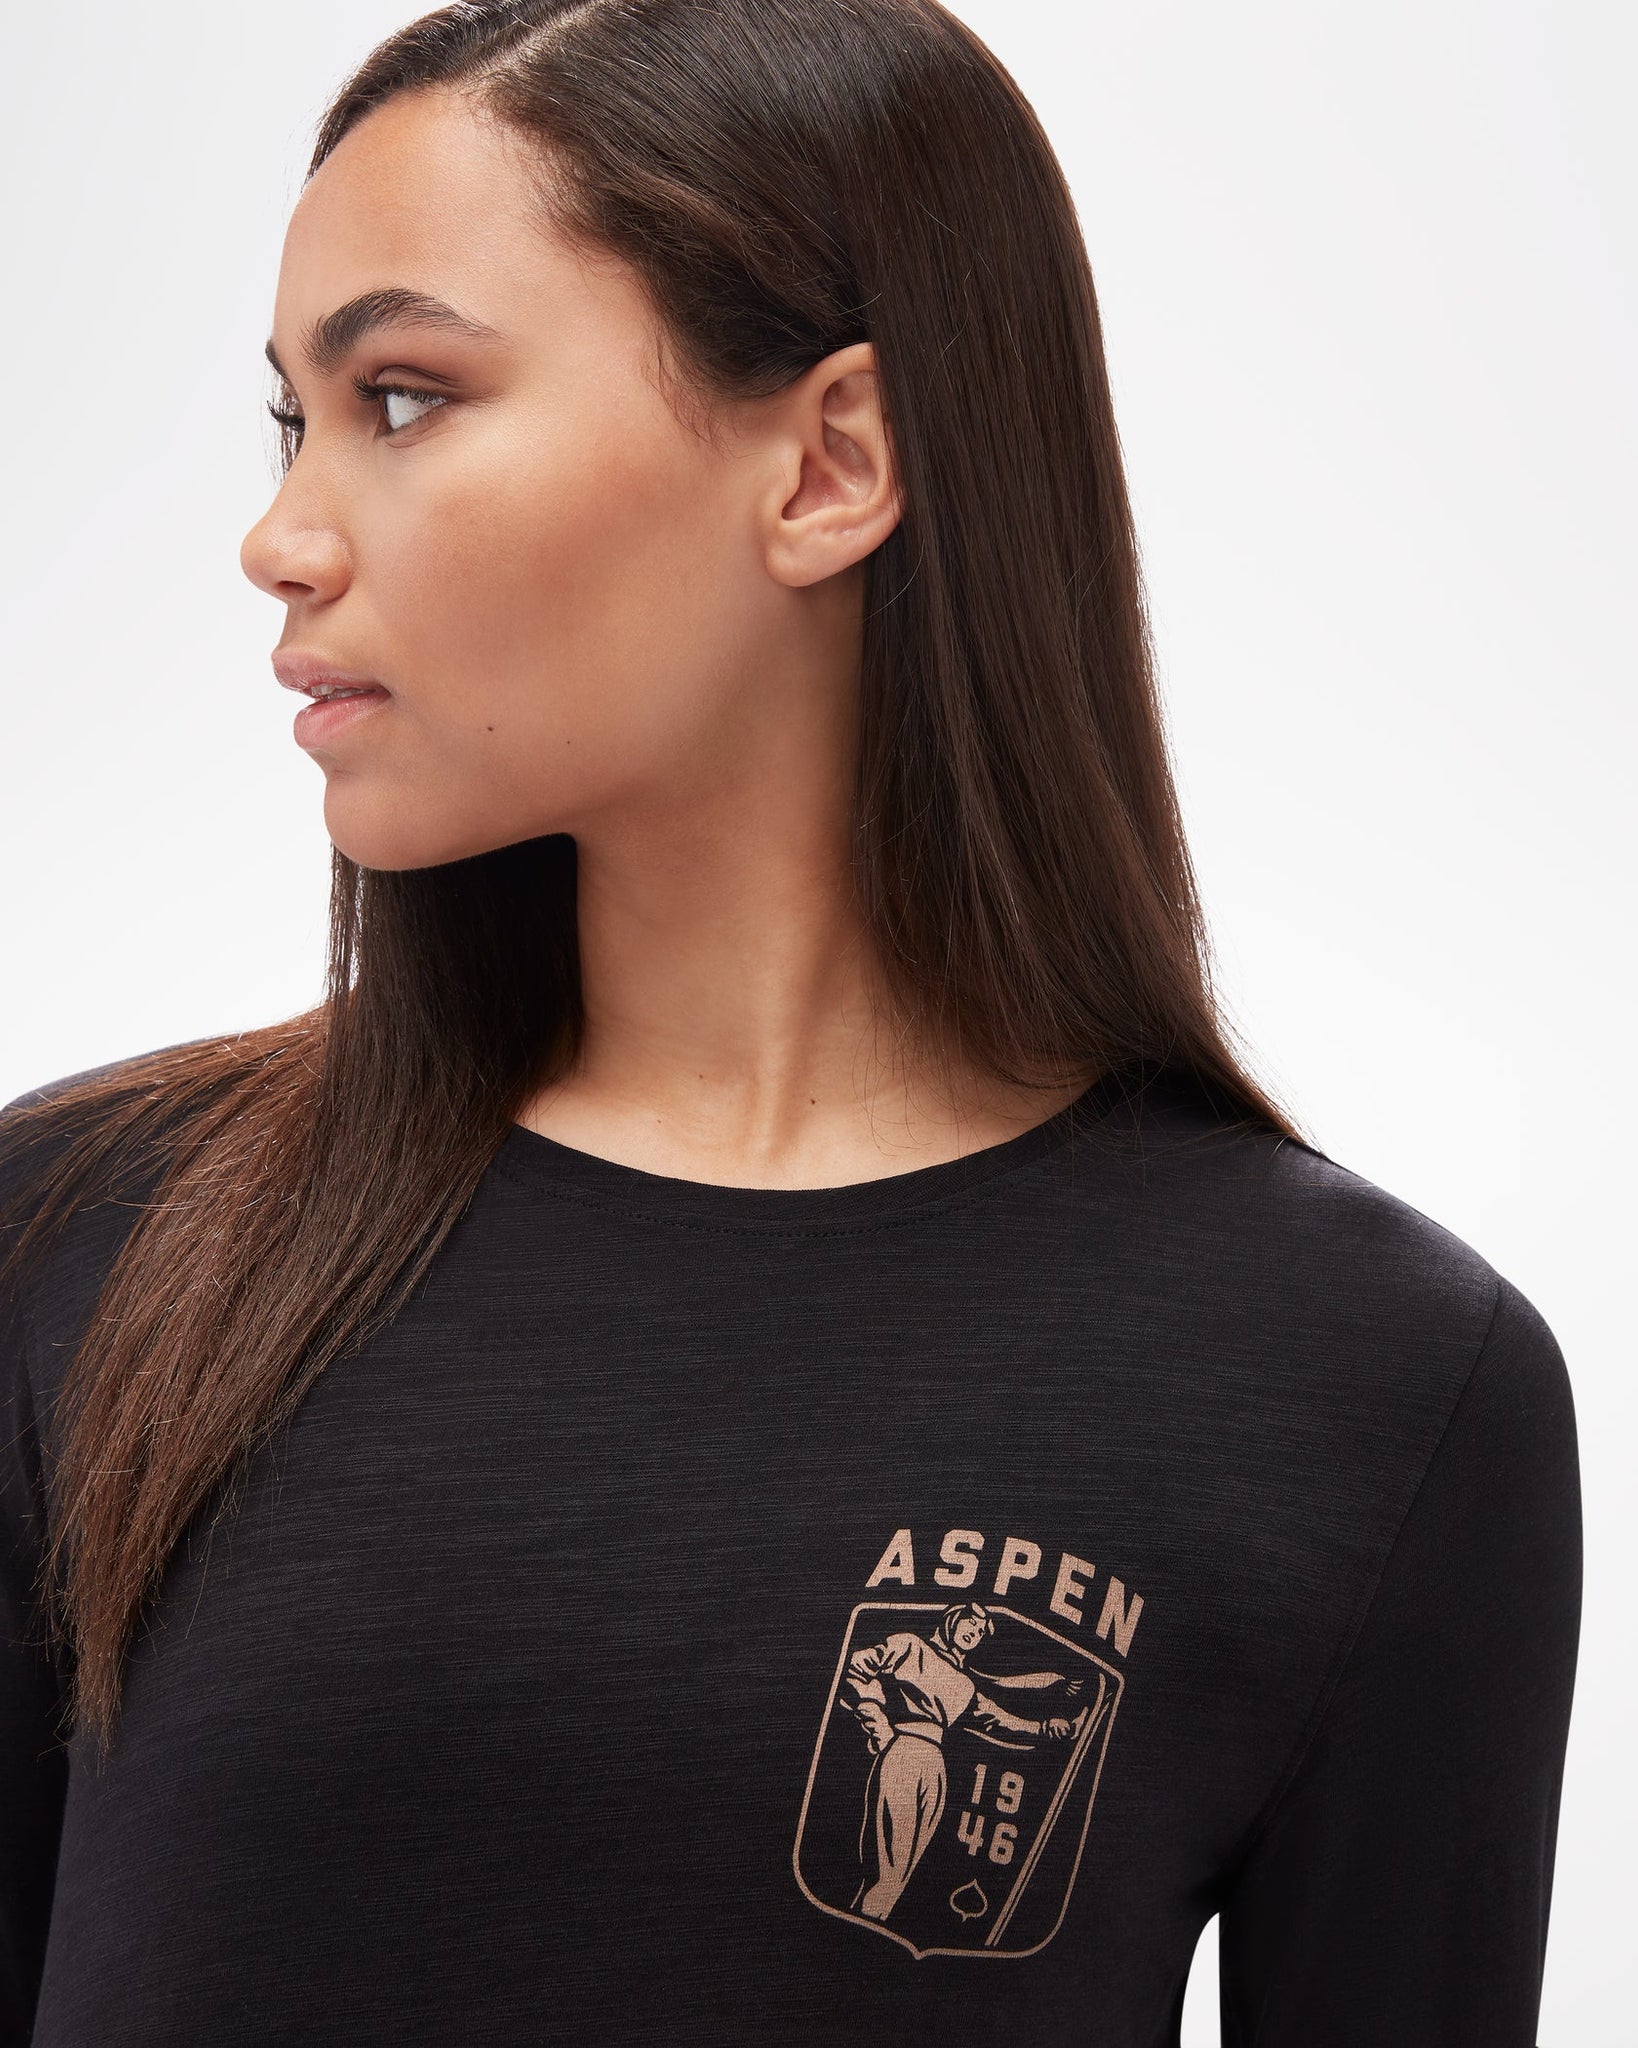 Camiseta térmica de mujer Aspen Print